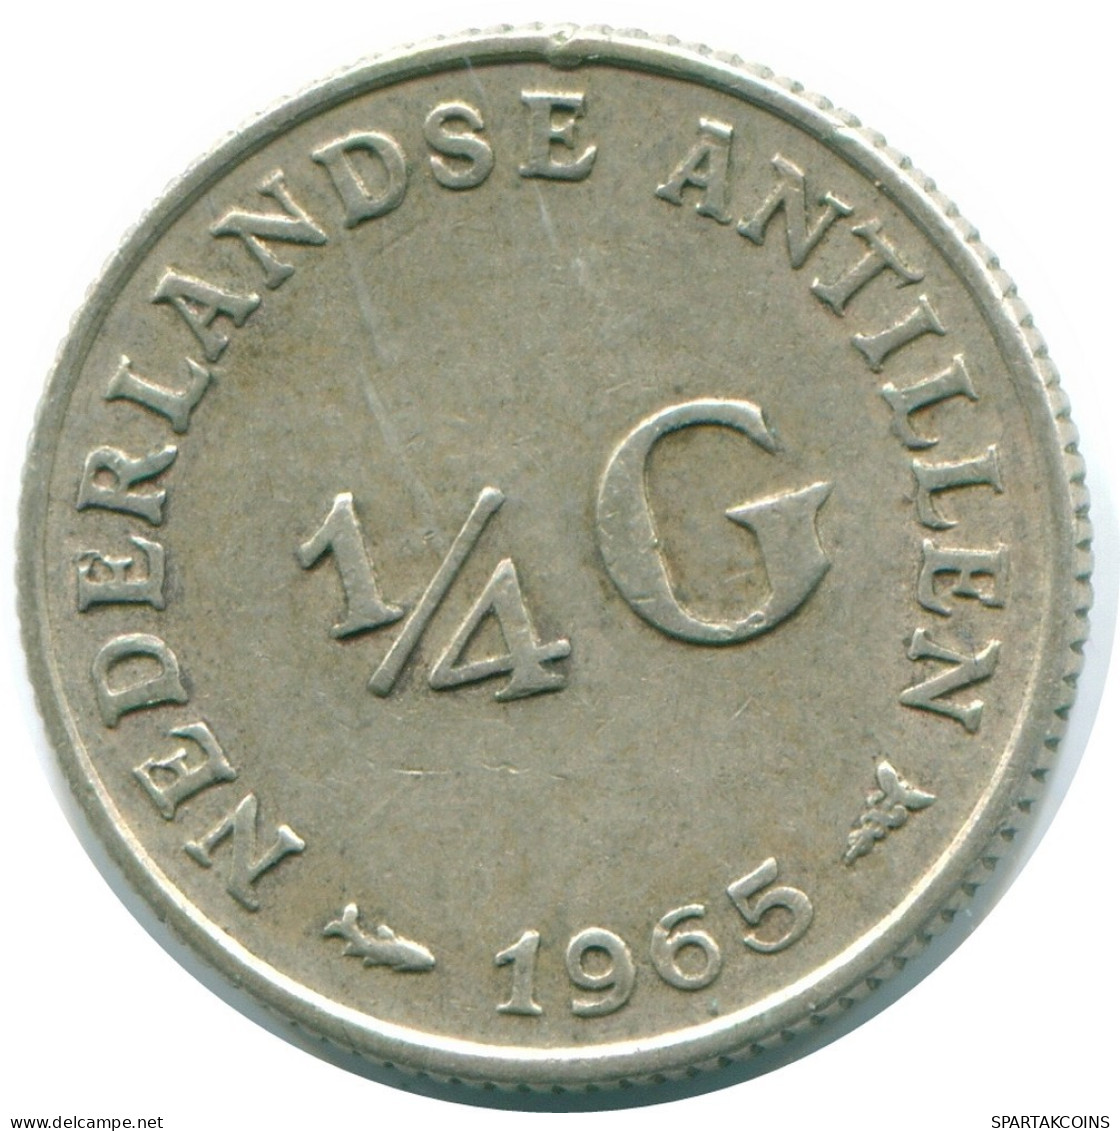 1/4 GULDEN 1965 NIEDERLÄNDISCHE ANTILLEN SILBER Koloniale Münze #NL11281.4.D.A - Antille Olandesi